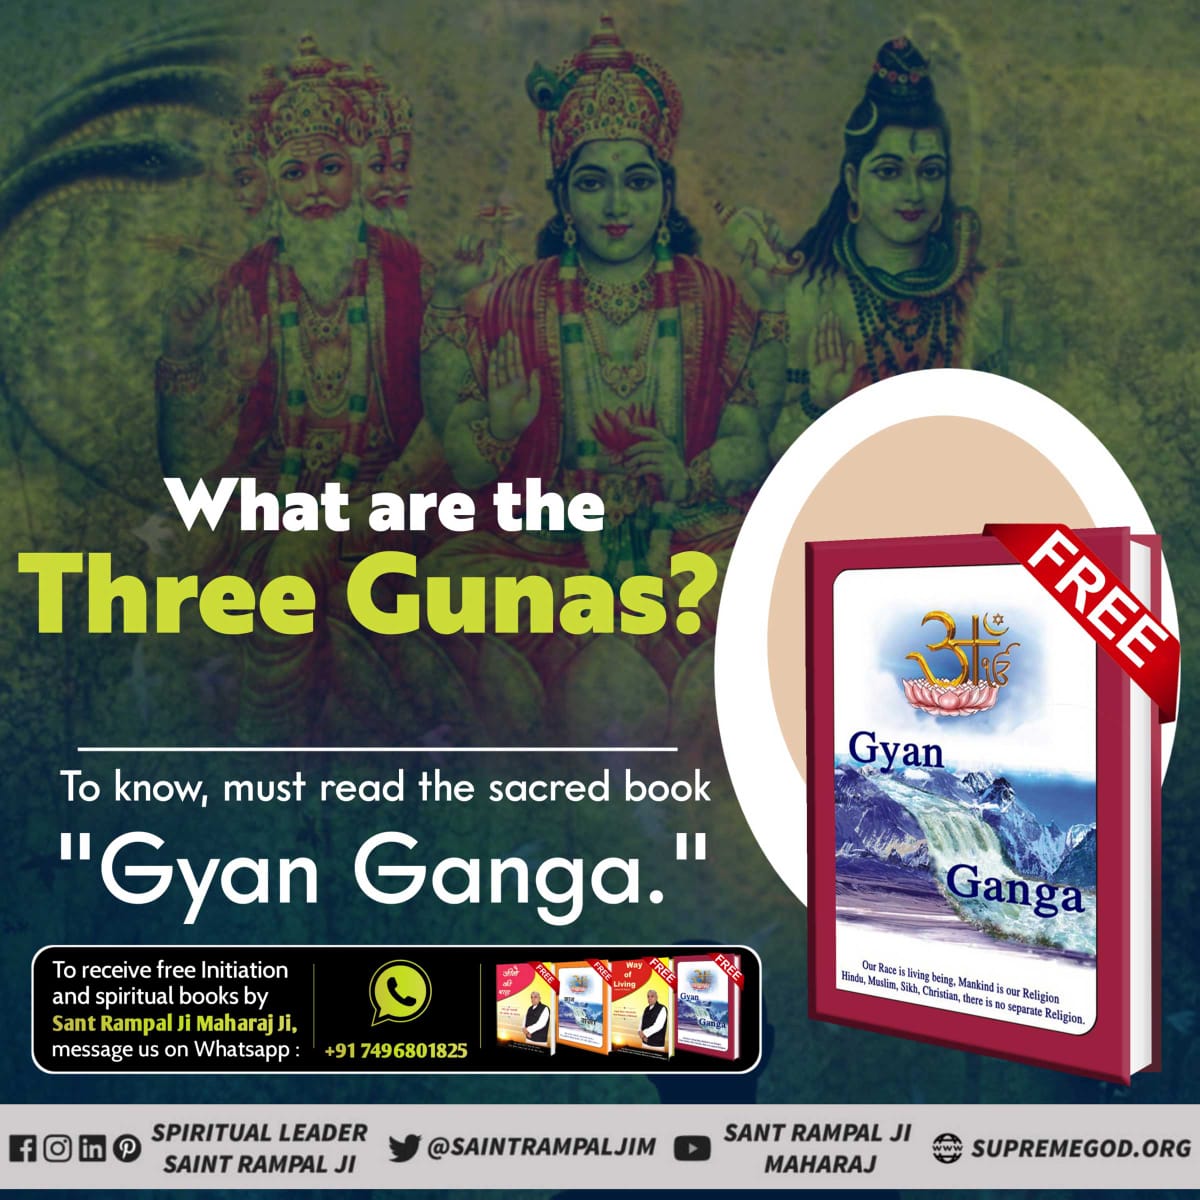 पवित्र गुरु ग्रन्थ साहेब में नानक जी ने धानक शब्द परमात्मा के लिए लिखा है। वह परमात्मा कौन है ? जानने के लिए अवश्य पढ़ें पुस्तक ज्ञान गंगा #ReadGyanGanga